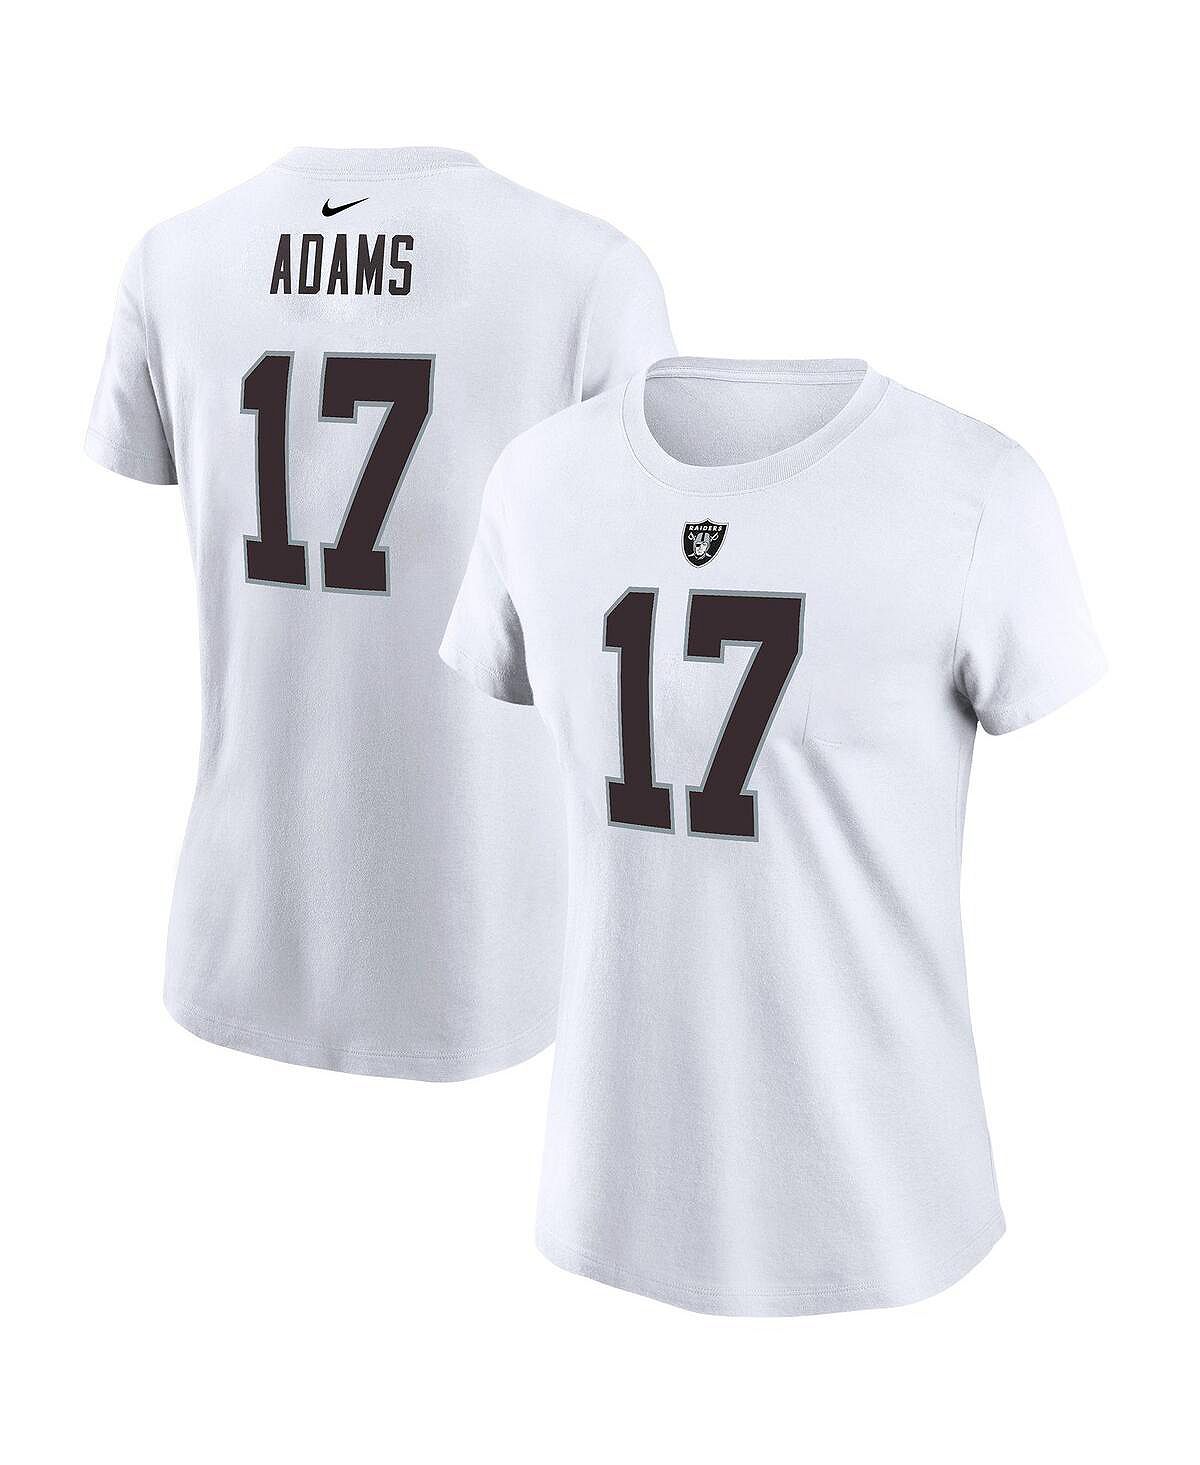 Женская футболка davante adams white las vegas raiders с именем и номером игрока Nike, белый цена и фото